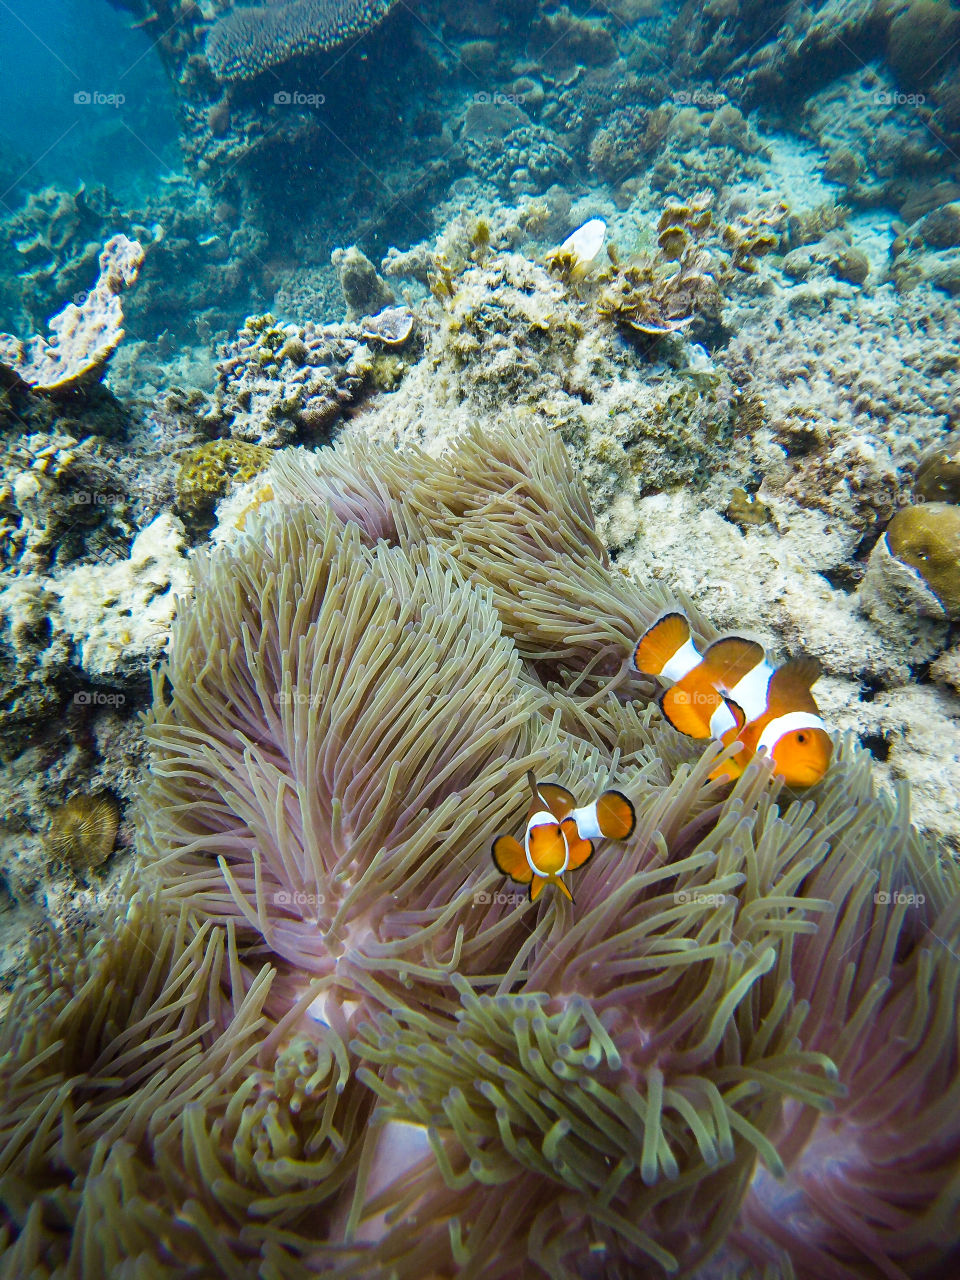 Nemo found me